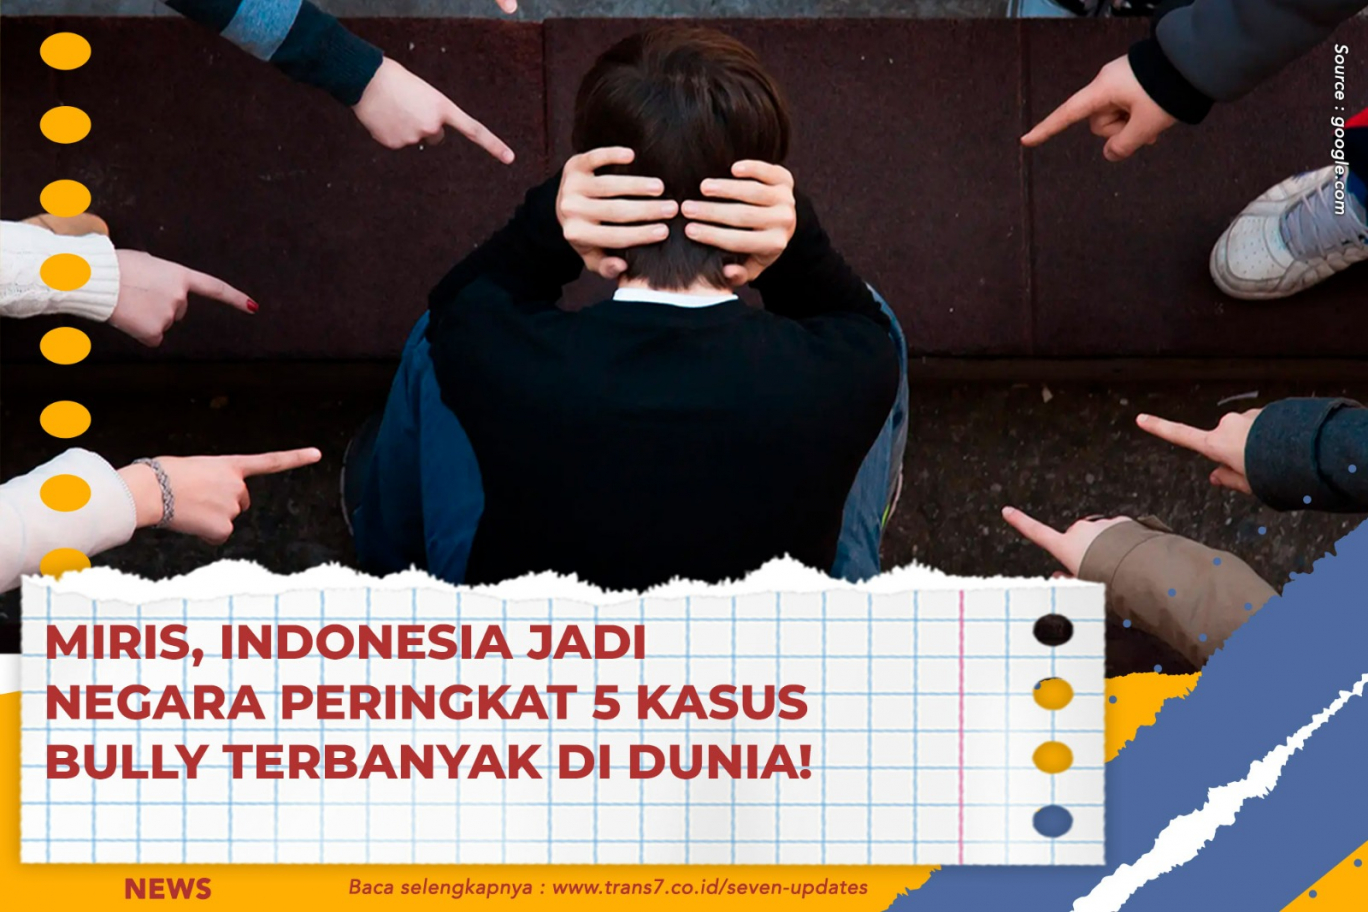 Trans Miris Indonesia Jadi Negara Peringkat Kasus Bully Terbanyak